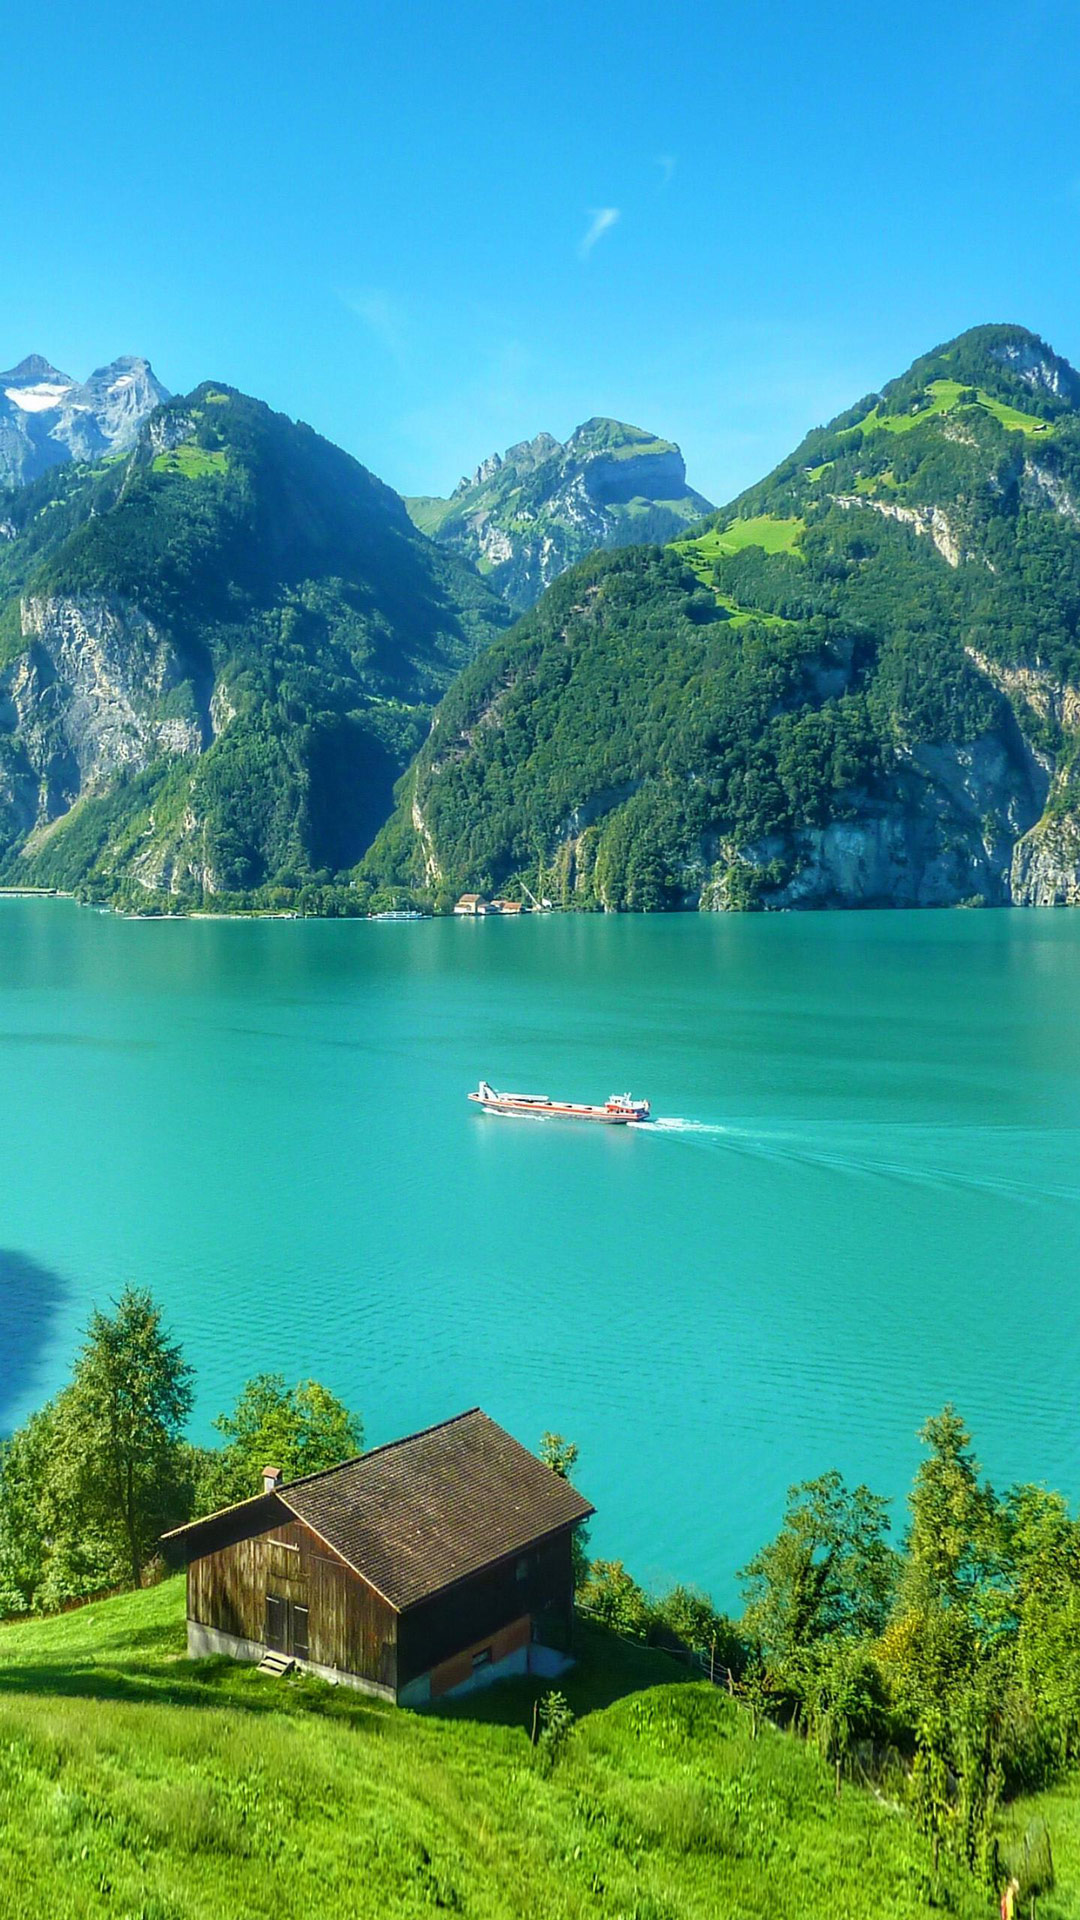 壁纸风景瑞士琉森湖,手机壁纸大全